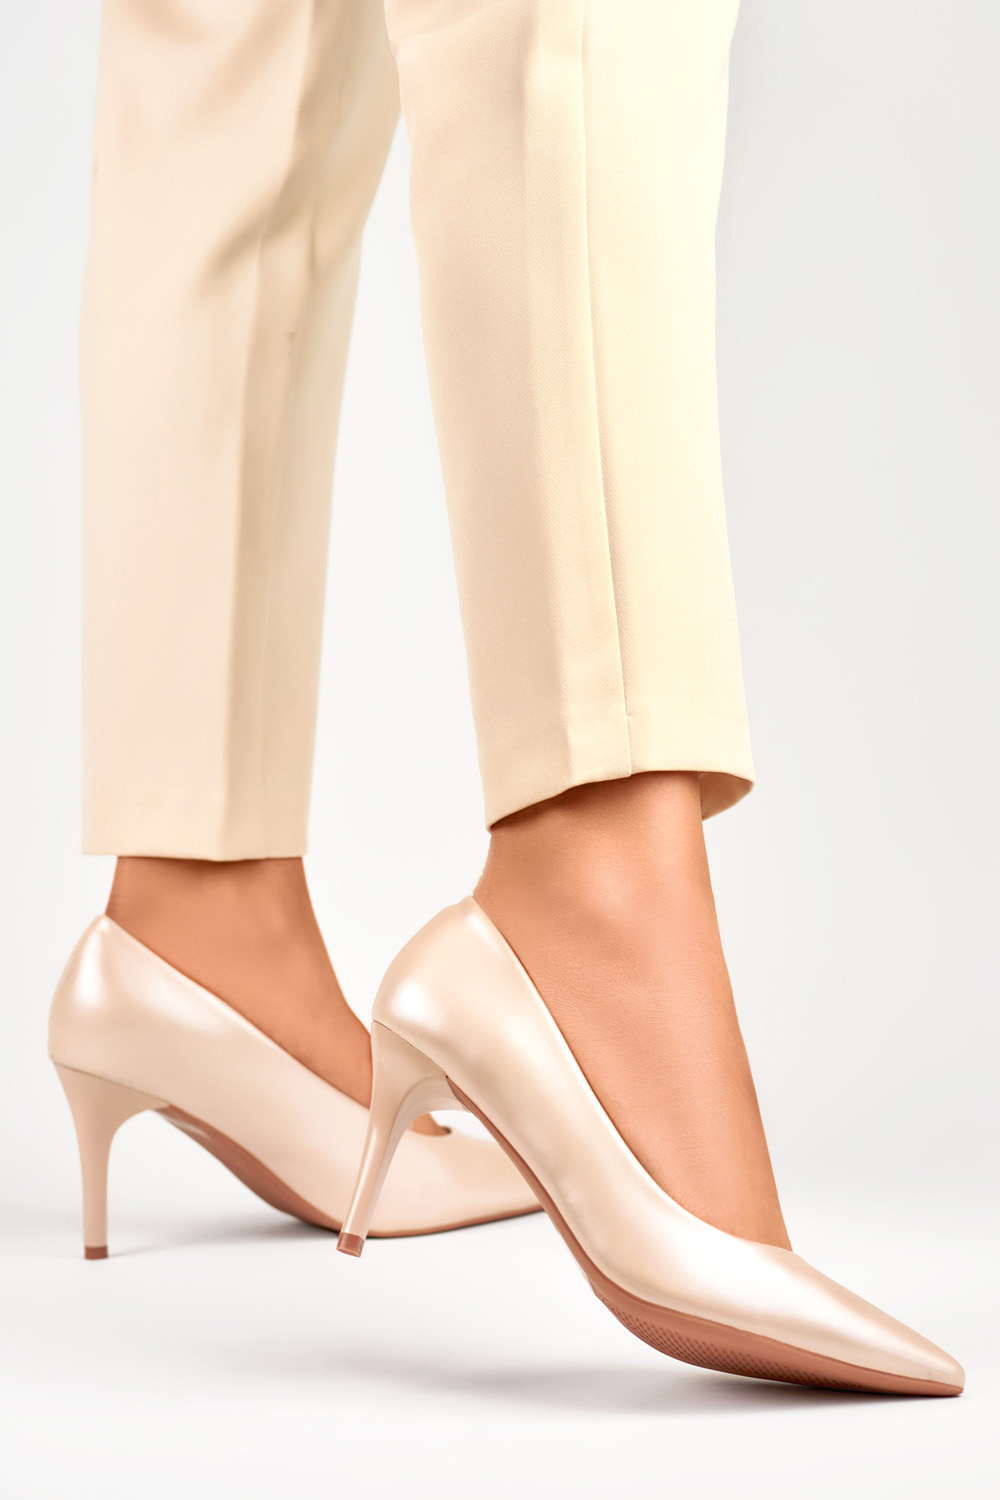  High heels model 190649 PRIMO  beige